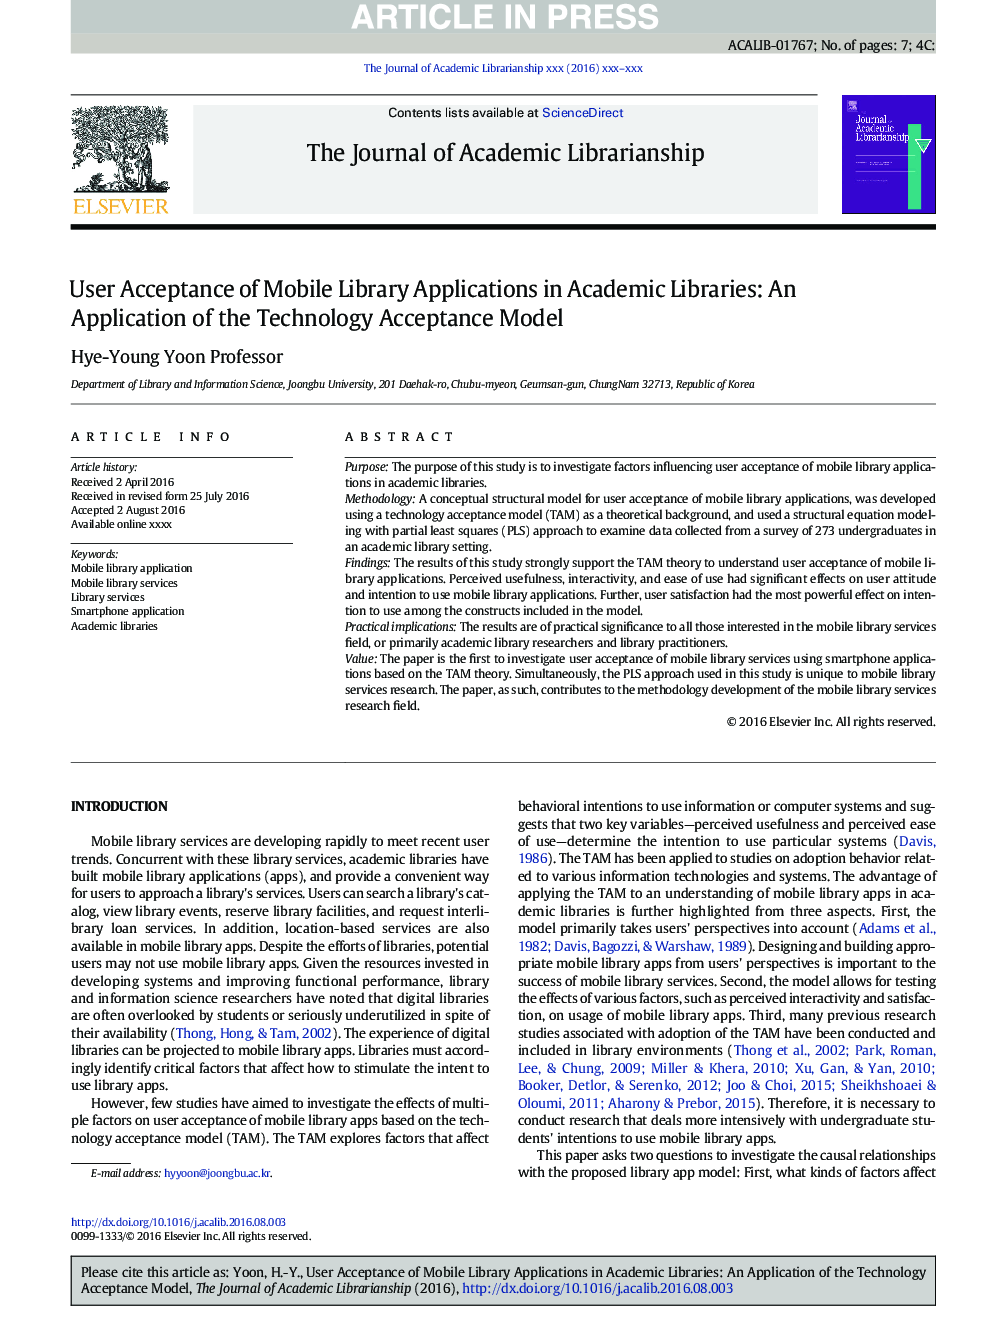 پذیرش کاربر از برنامه های کاربردی کتابخانه های موبایل در کتابخانه های دانشگاهی: استفاده از مدل پذیرش فناوری 